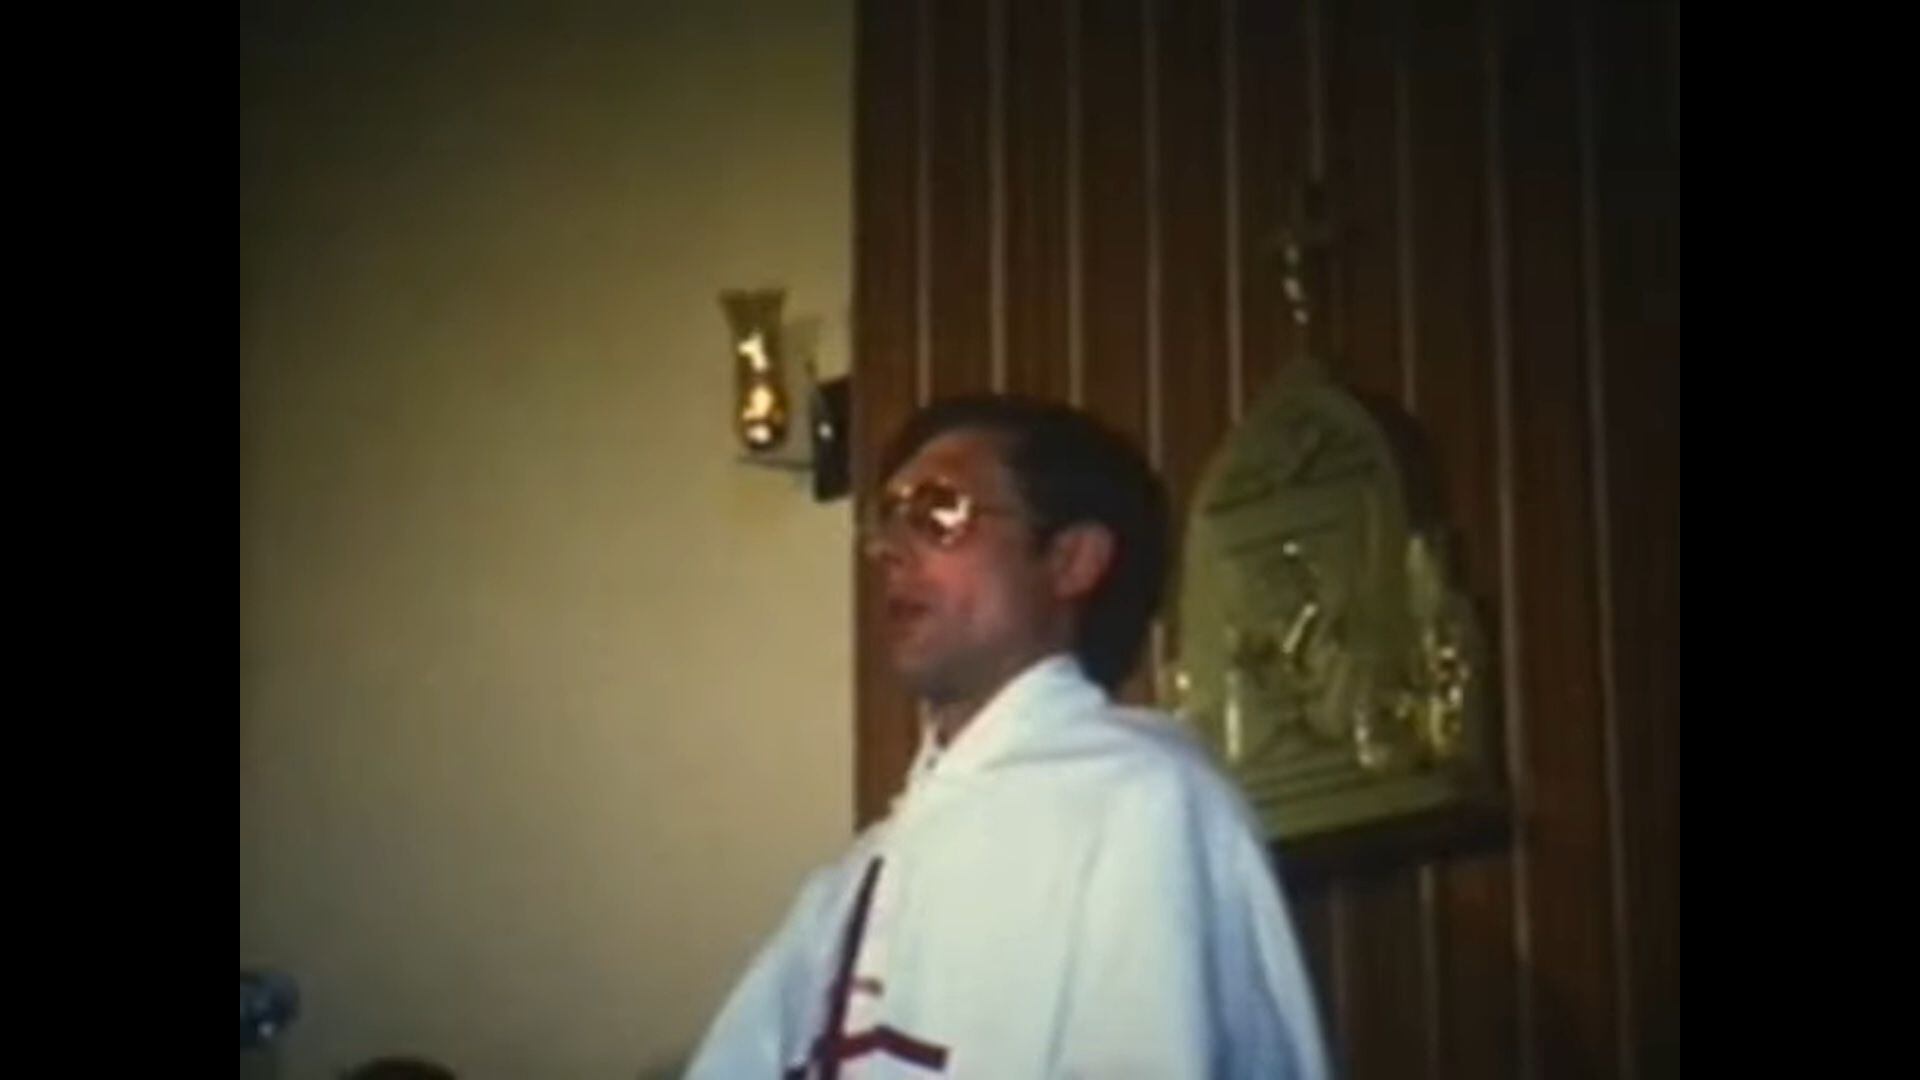 Secuencia de un vídeo escolar donde aparece el claretiano acusado mientras oficia una misa.